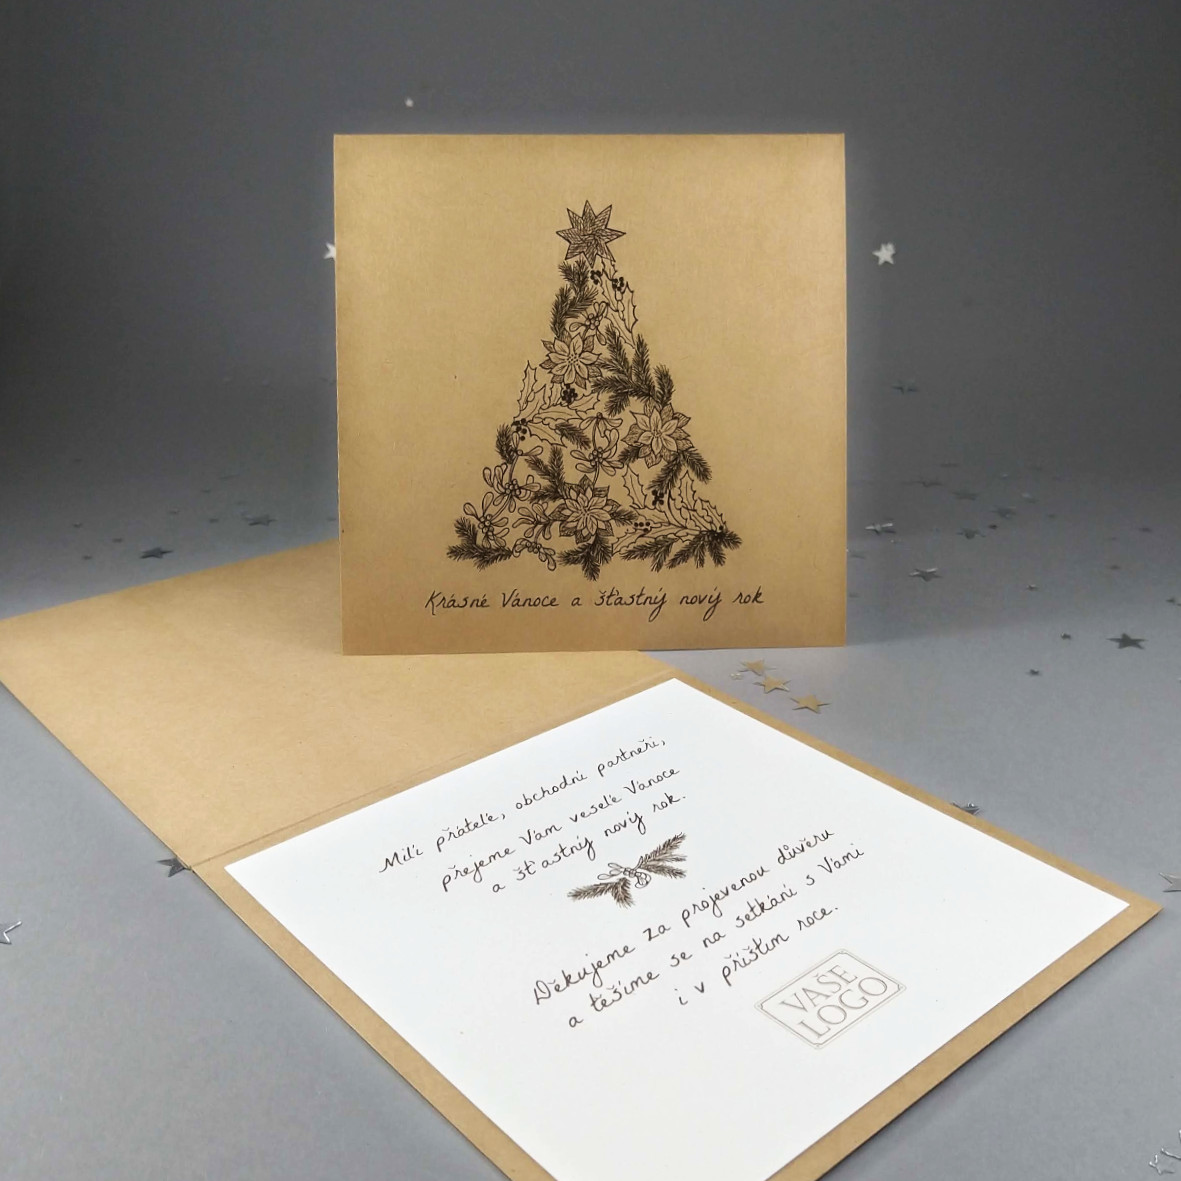 Novoroční-vánoční přání z ekologických recyklovaných papírů s motivem vánočního stromku. Otevírací, čtvercový formát 140 × 140 mm, digitální tisk.